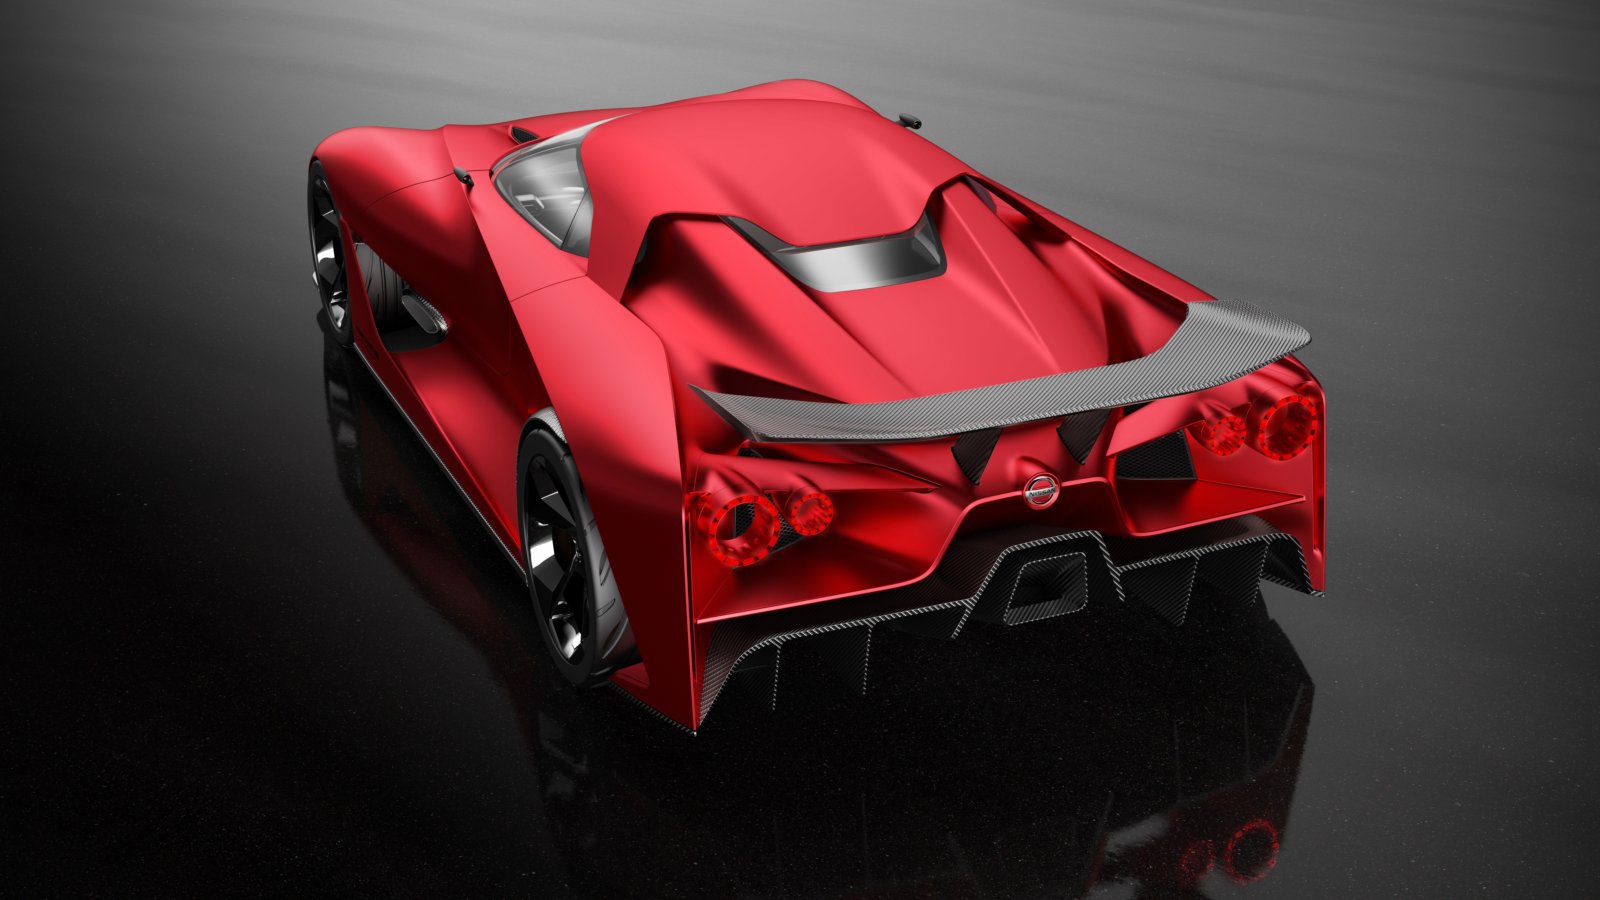 Nový Nissan GT-R bude strojem pekelným, to se dá říci už nyní. Jestli ale bude vypadat jako koncept Vision Gran Turismo, stvořený pro stejnojmennou závodní hru, je ve hvězdách. Ono herní auto každopádně pro Tokio dostalo červený lak Fire Knight a nebezpečně mu to sekne!